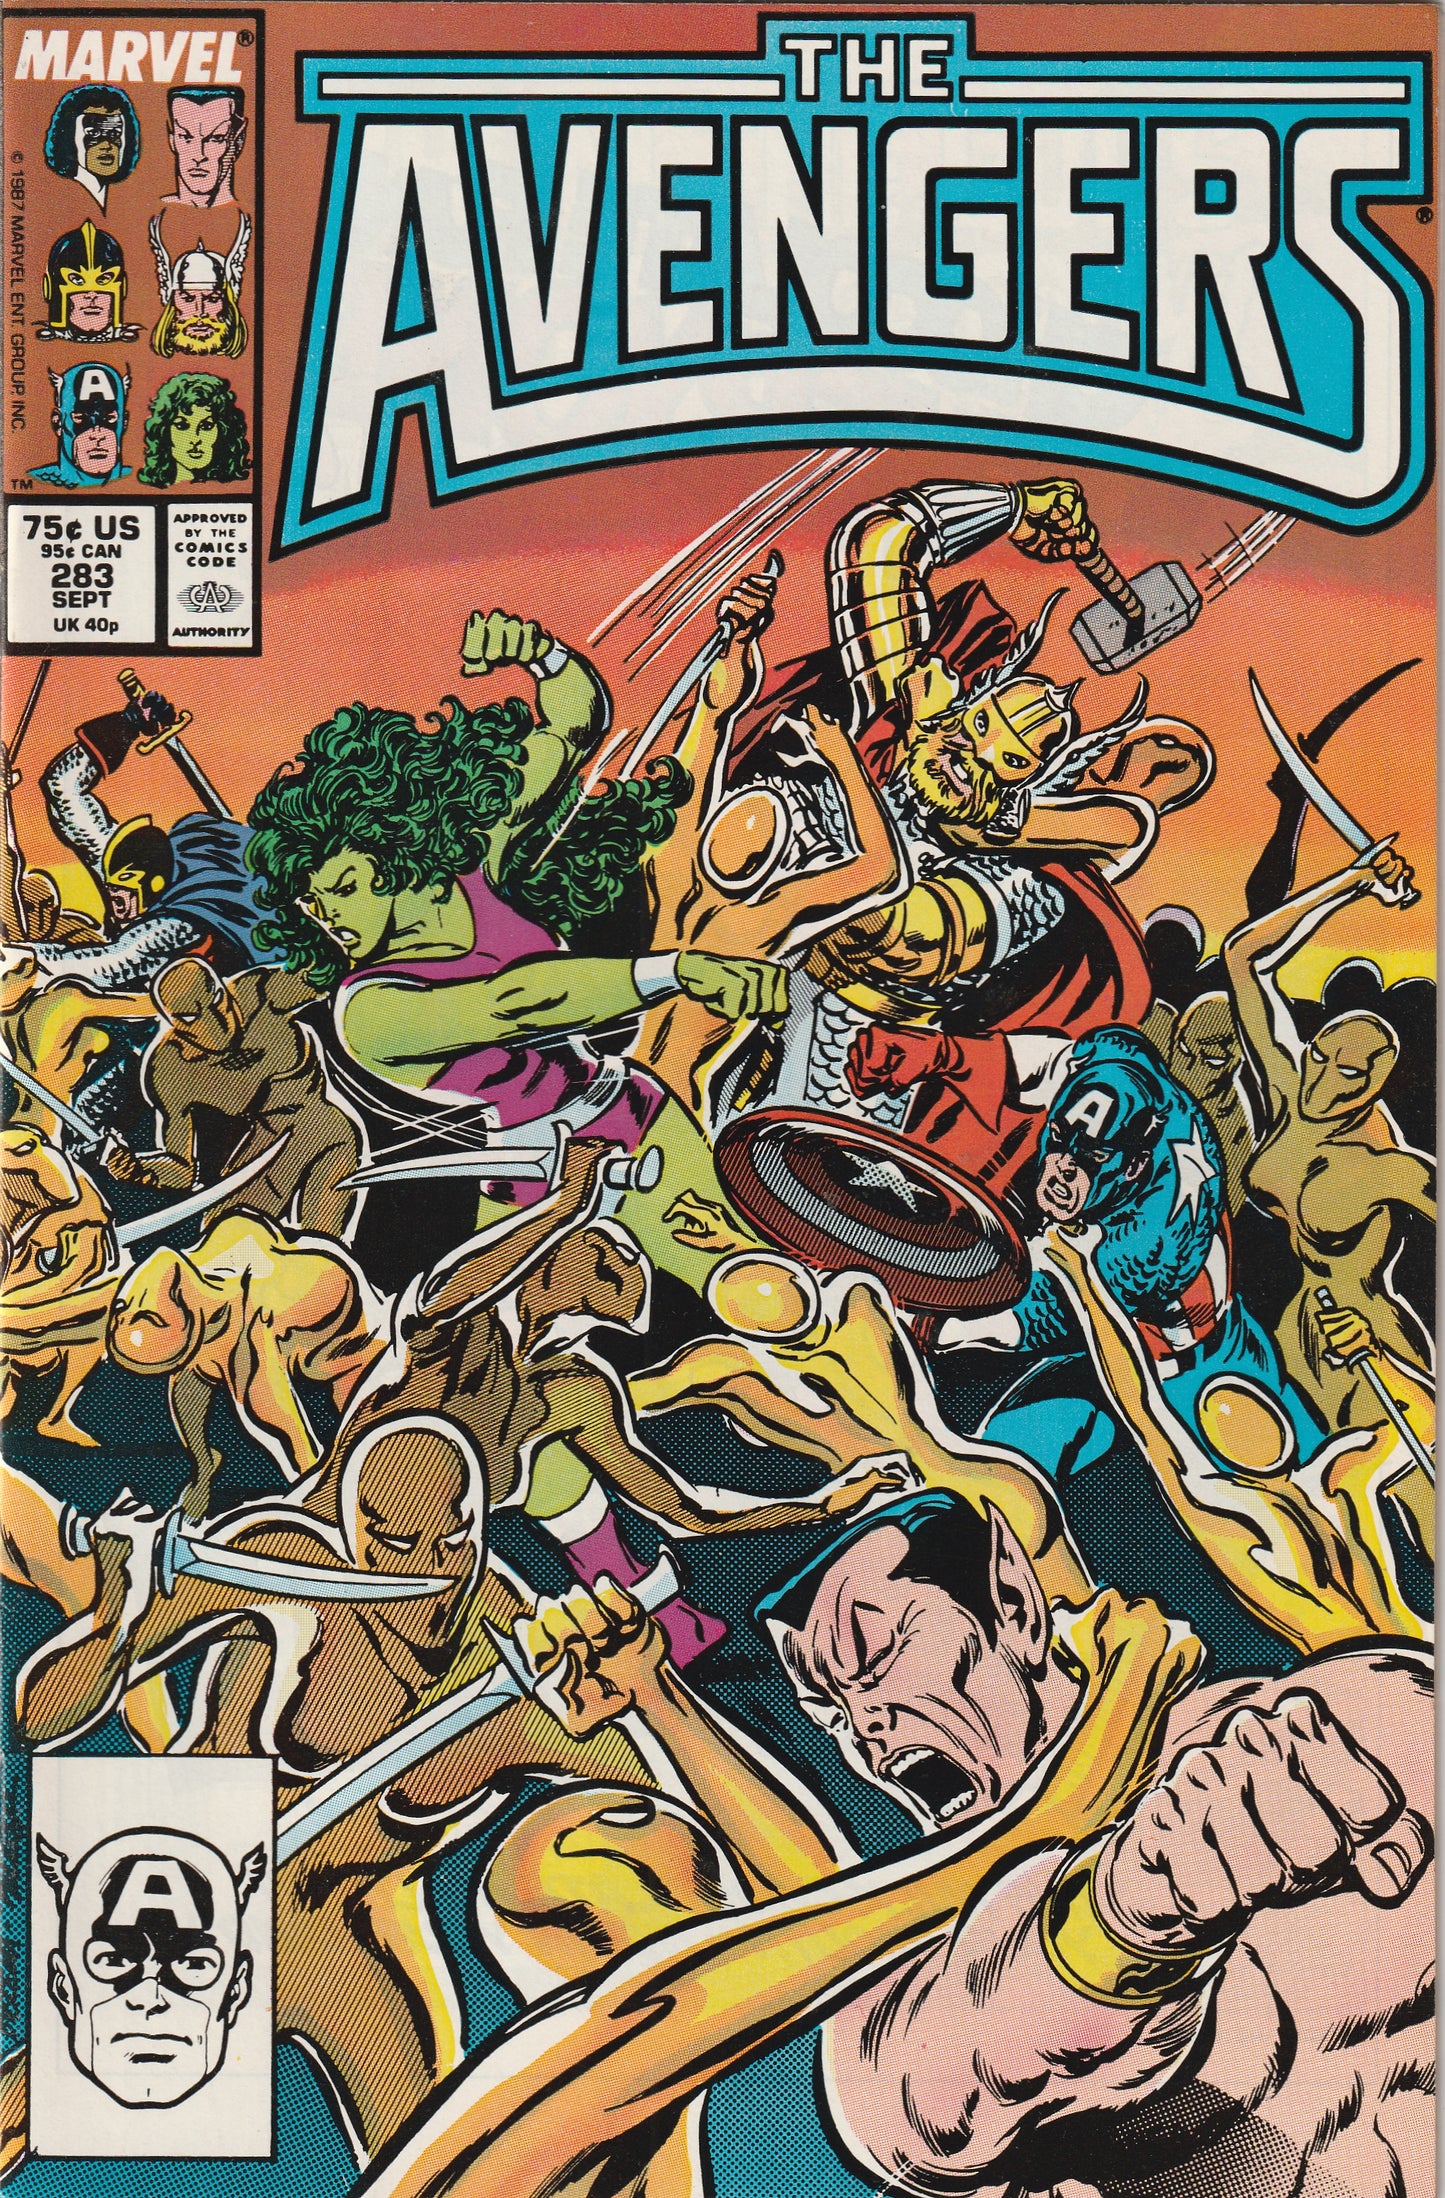 Avengers #283 (1987)